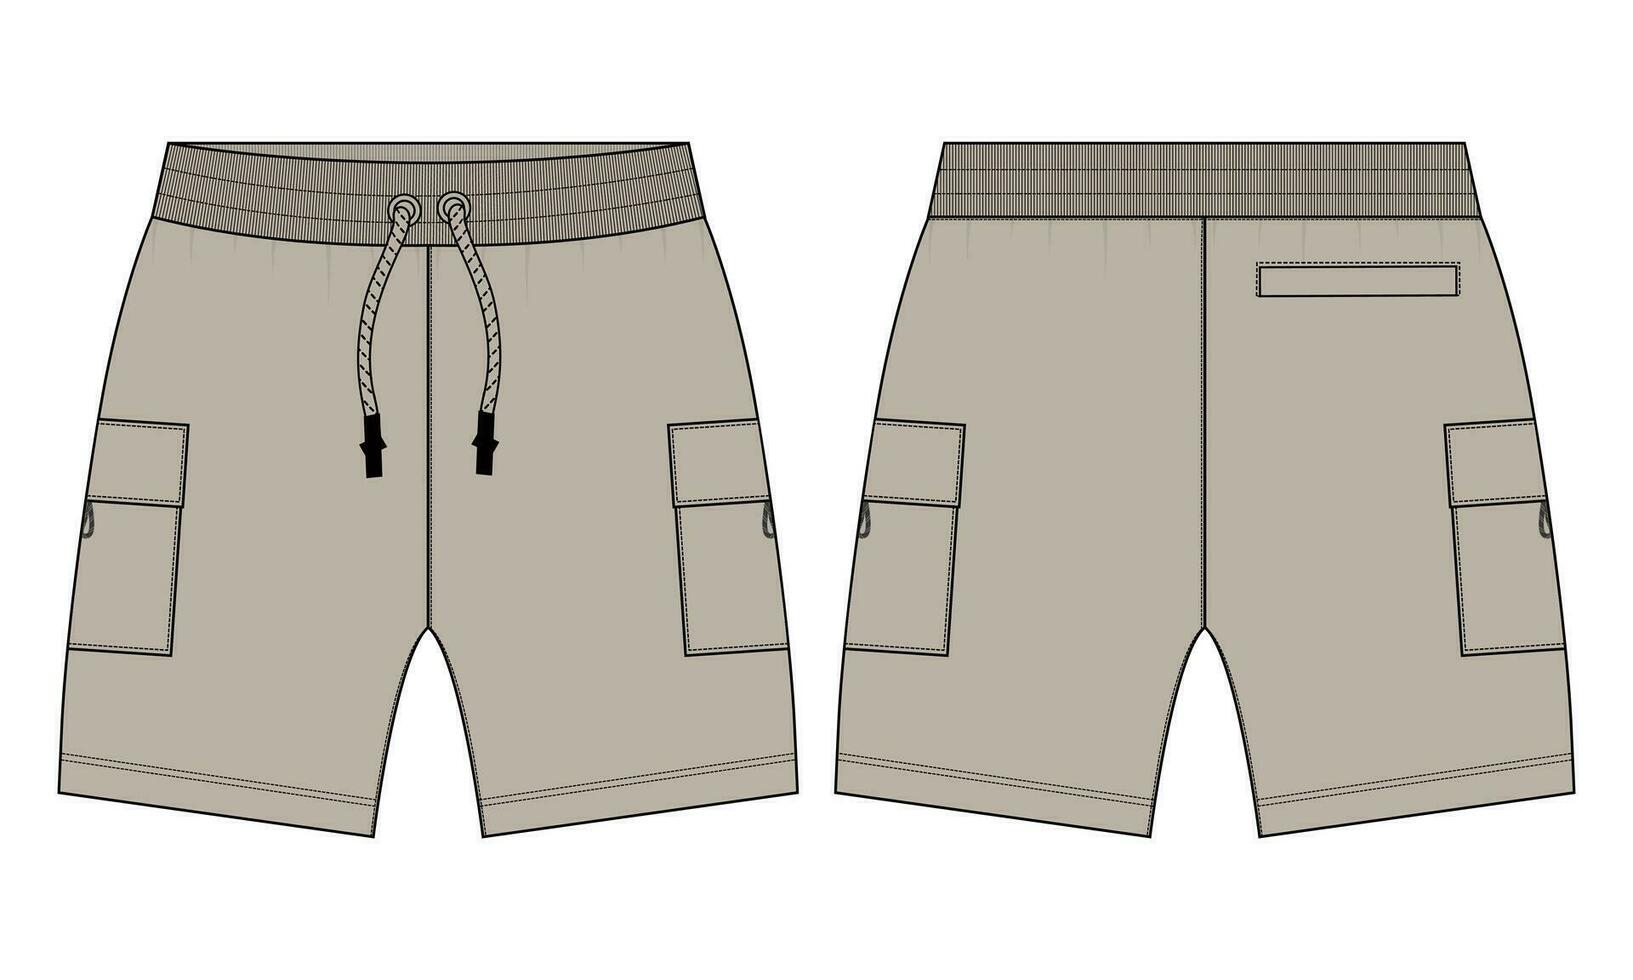 Pojkar svettas shorts vektor mode platt skiss mall. för ung män teknisk teckning mode konst illustration.